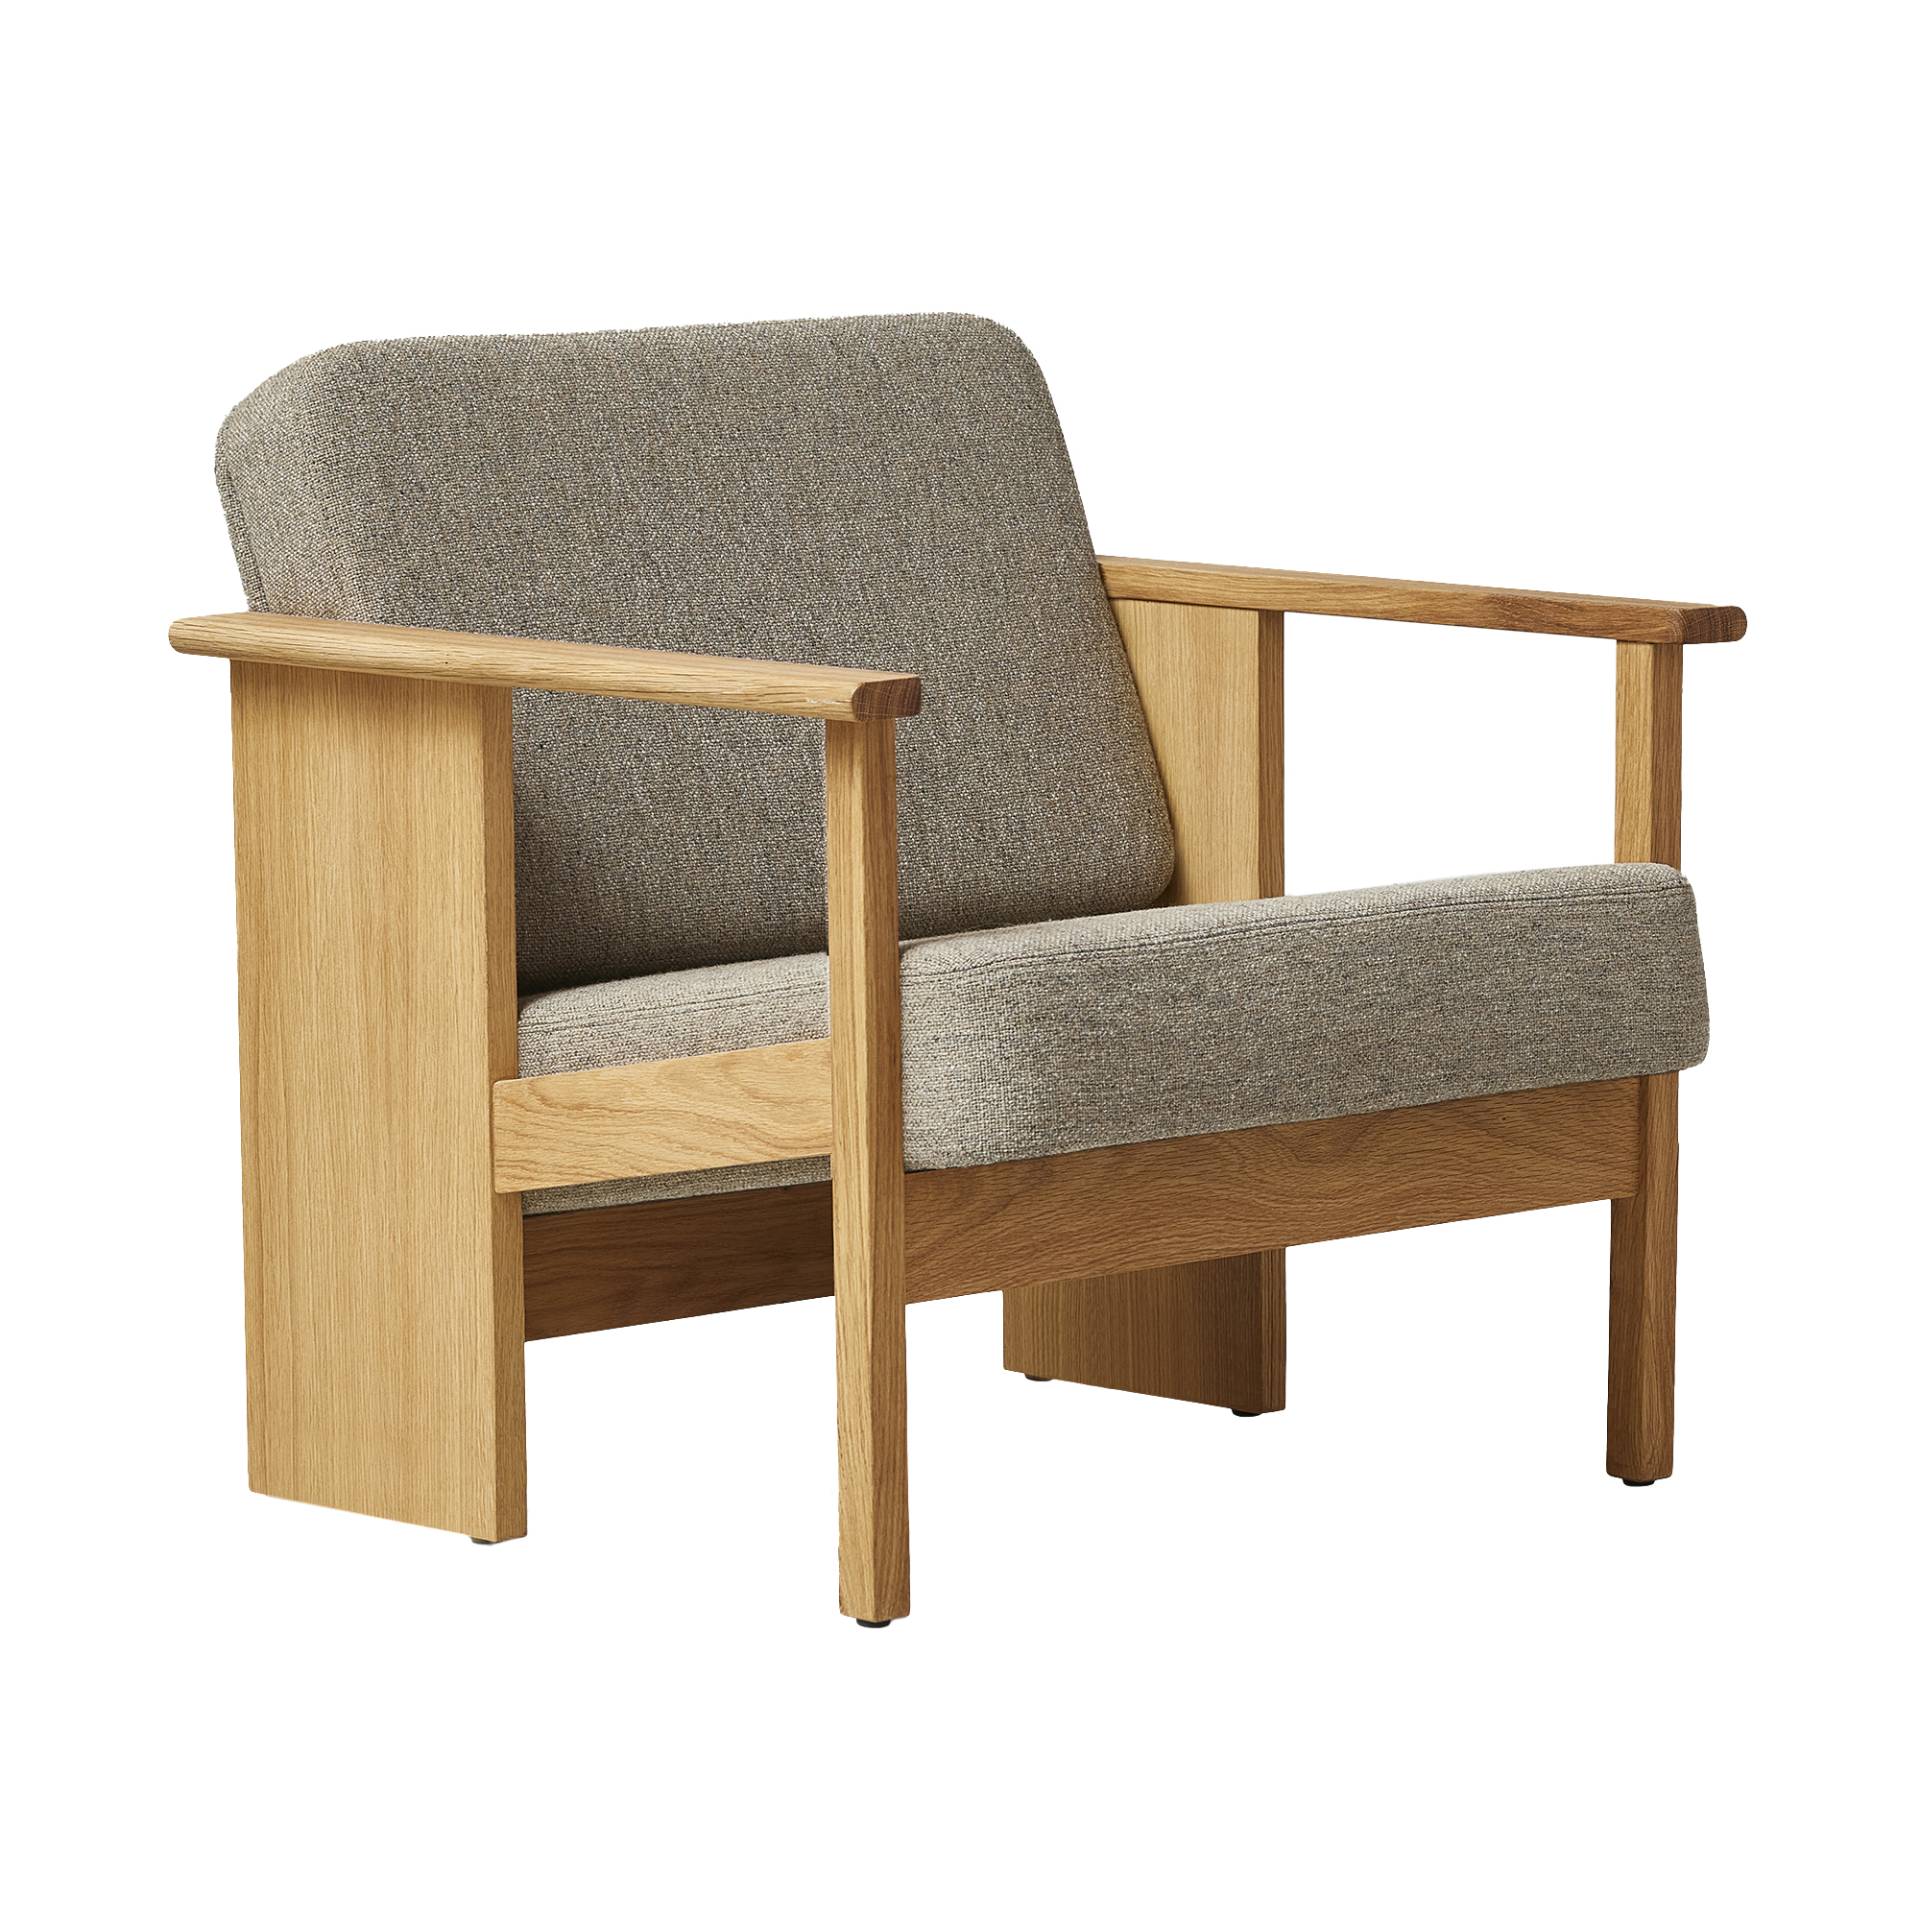 Form & Refine - Block Lounge Sessel Eiche geölt - braun 227/Hallingdal 65/LxBxH 69,5x73,5x70cm/Gestell Eiche geölt von Form & Refine